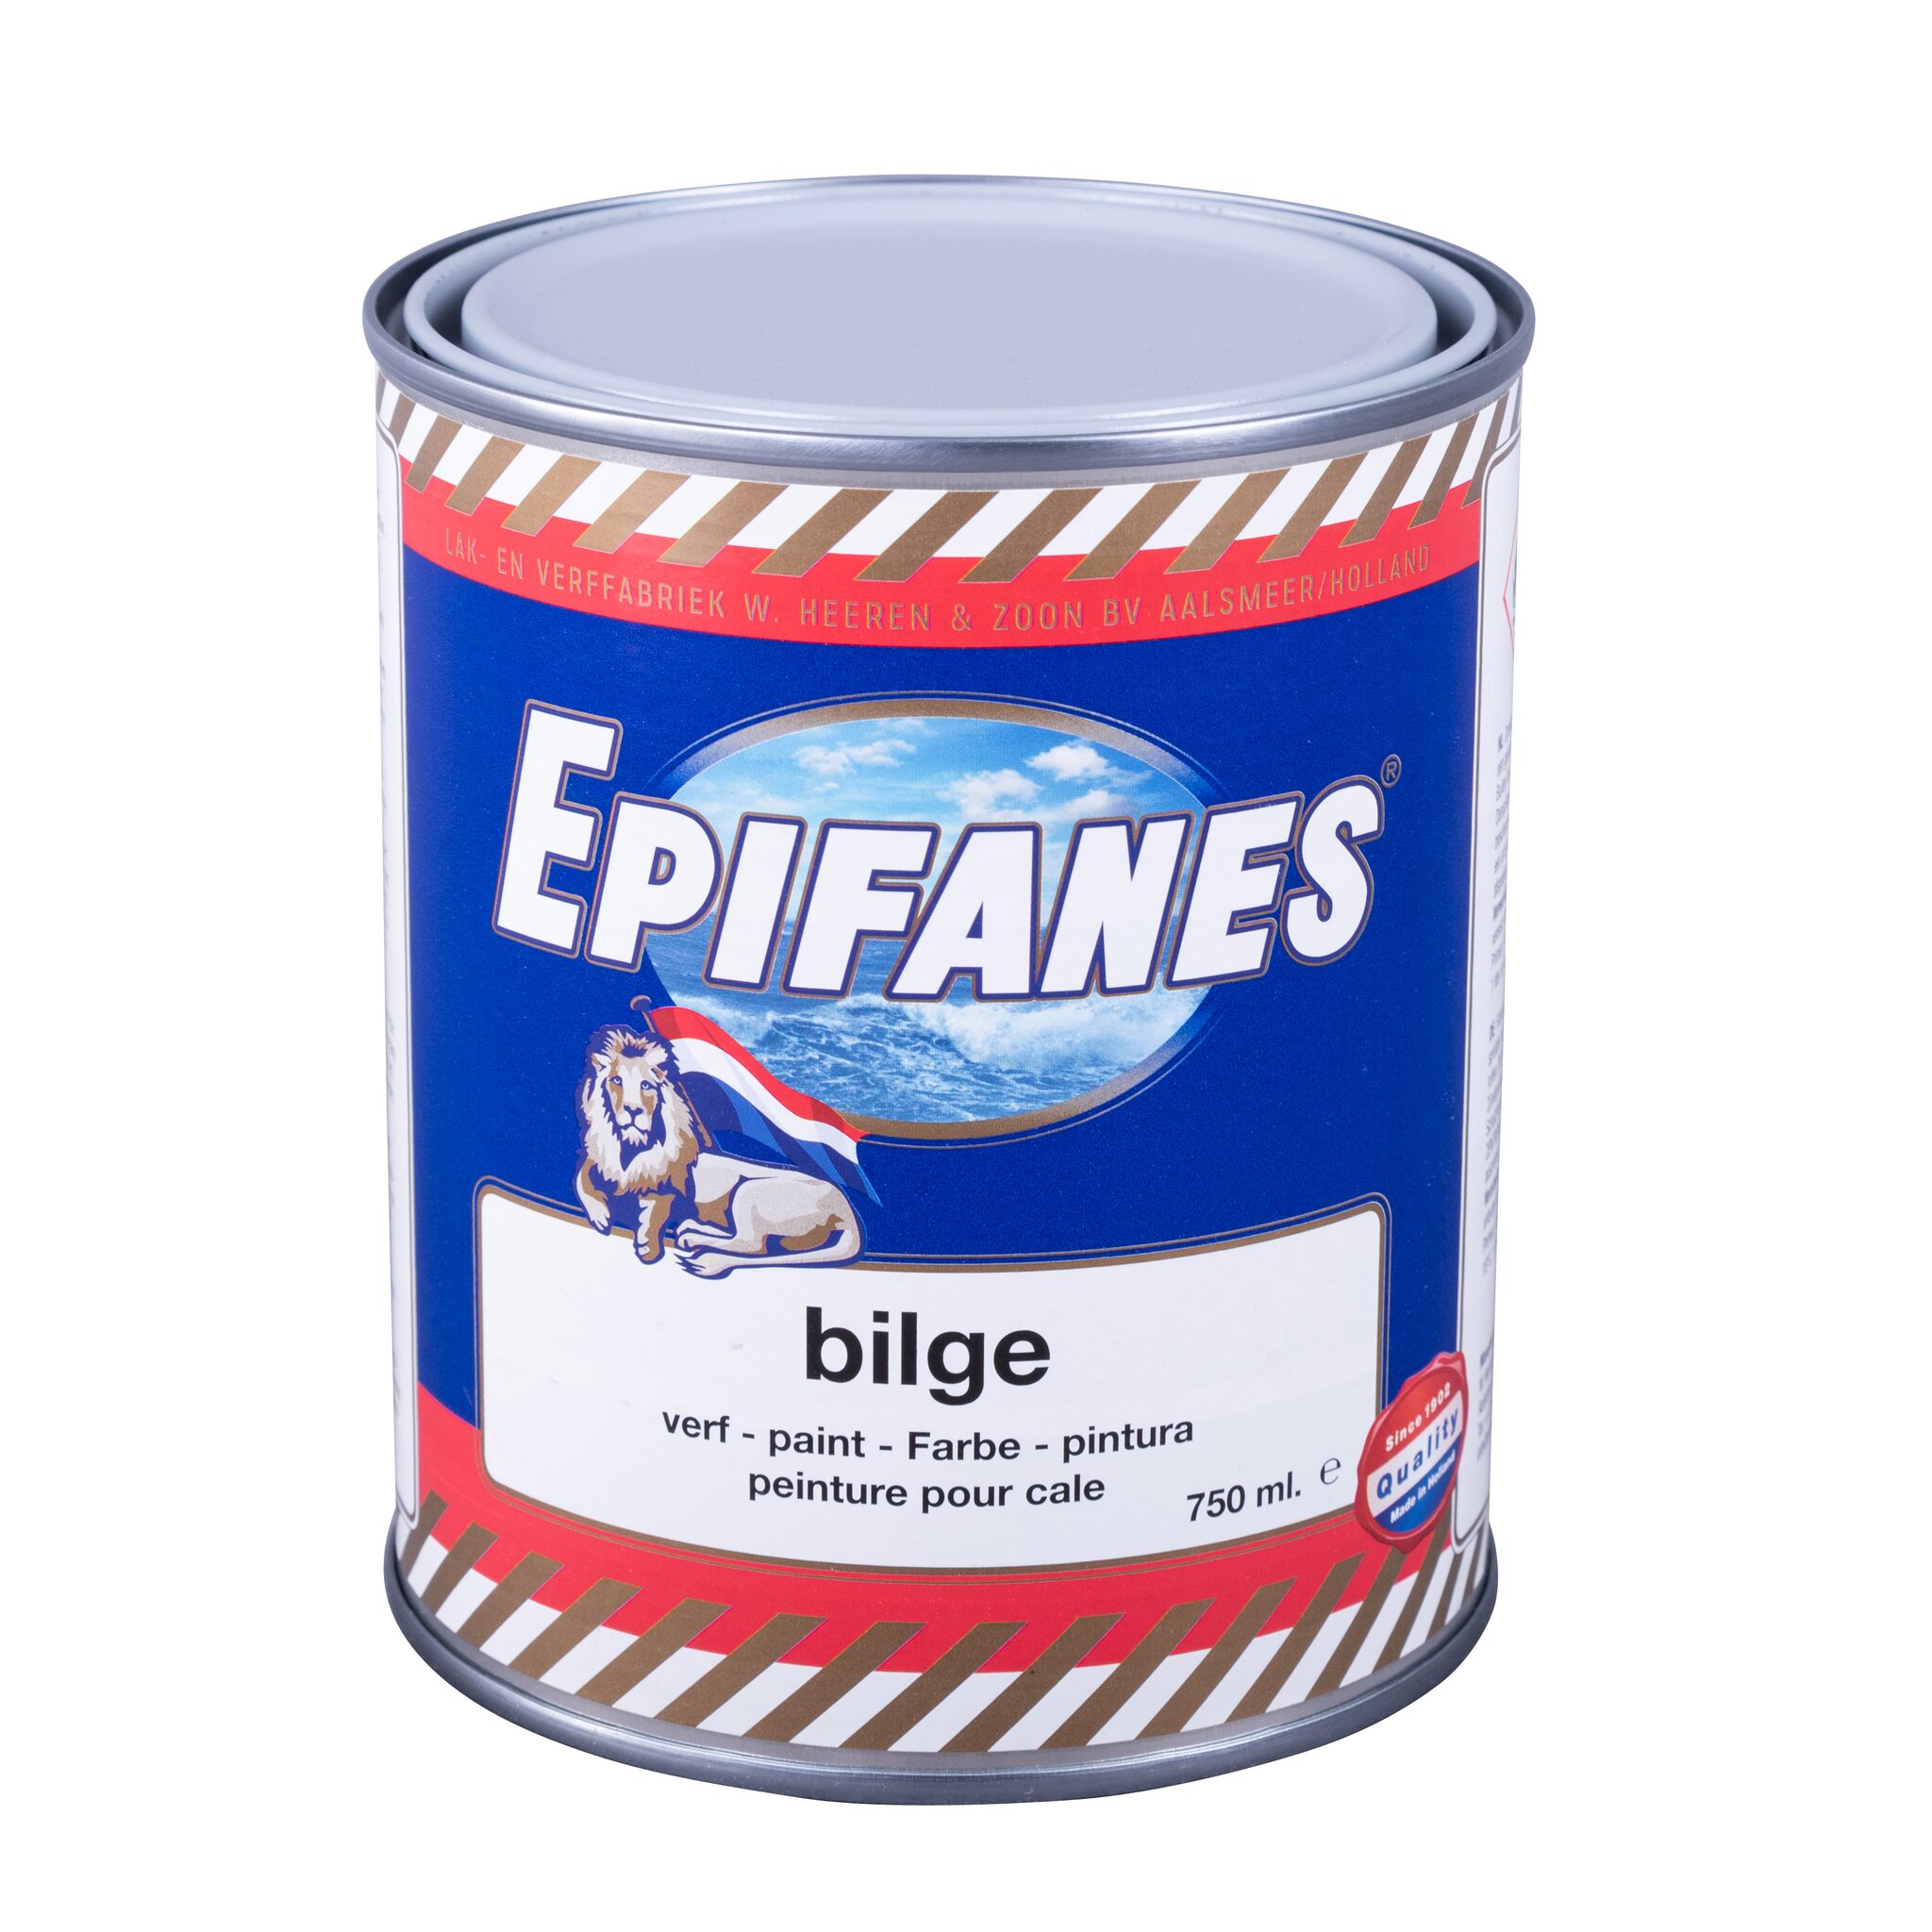 EPIFANES Bilge paint